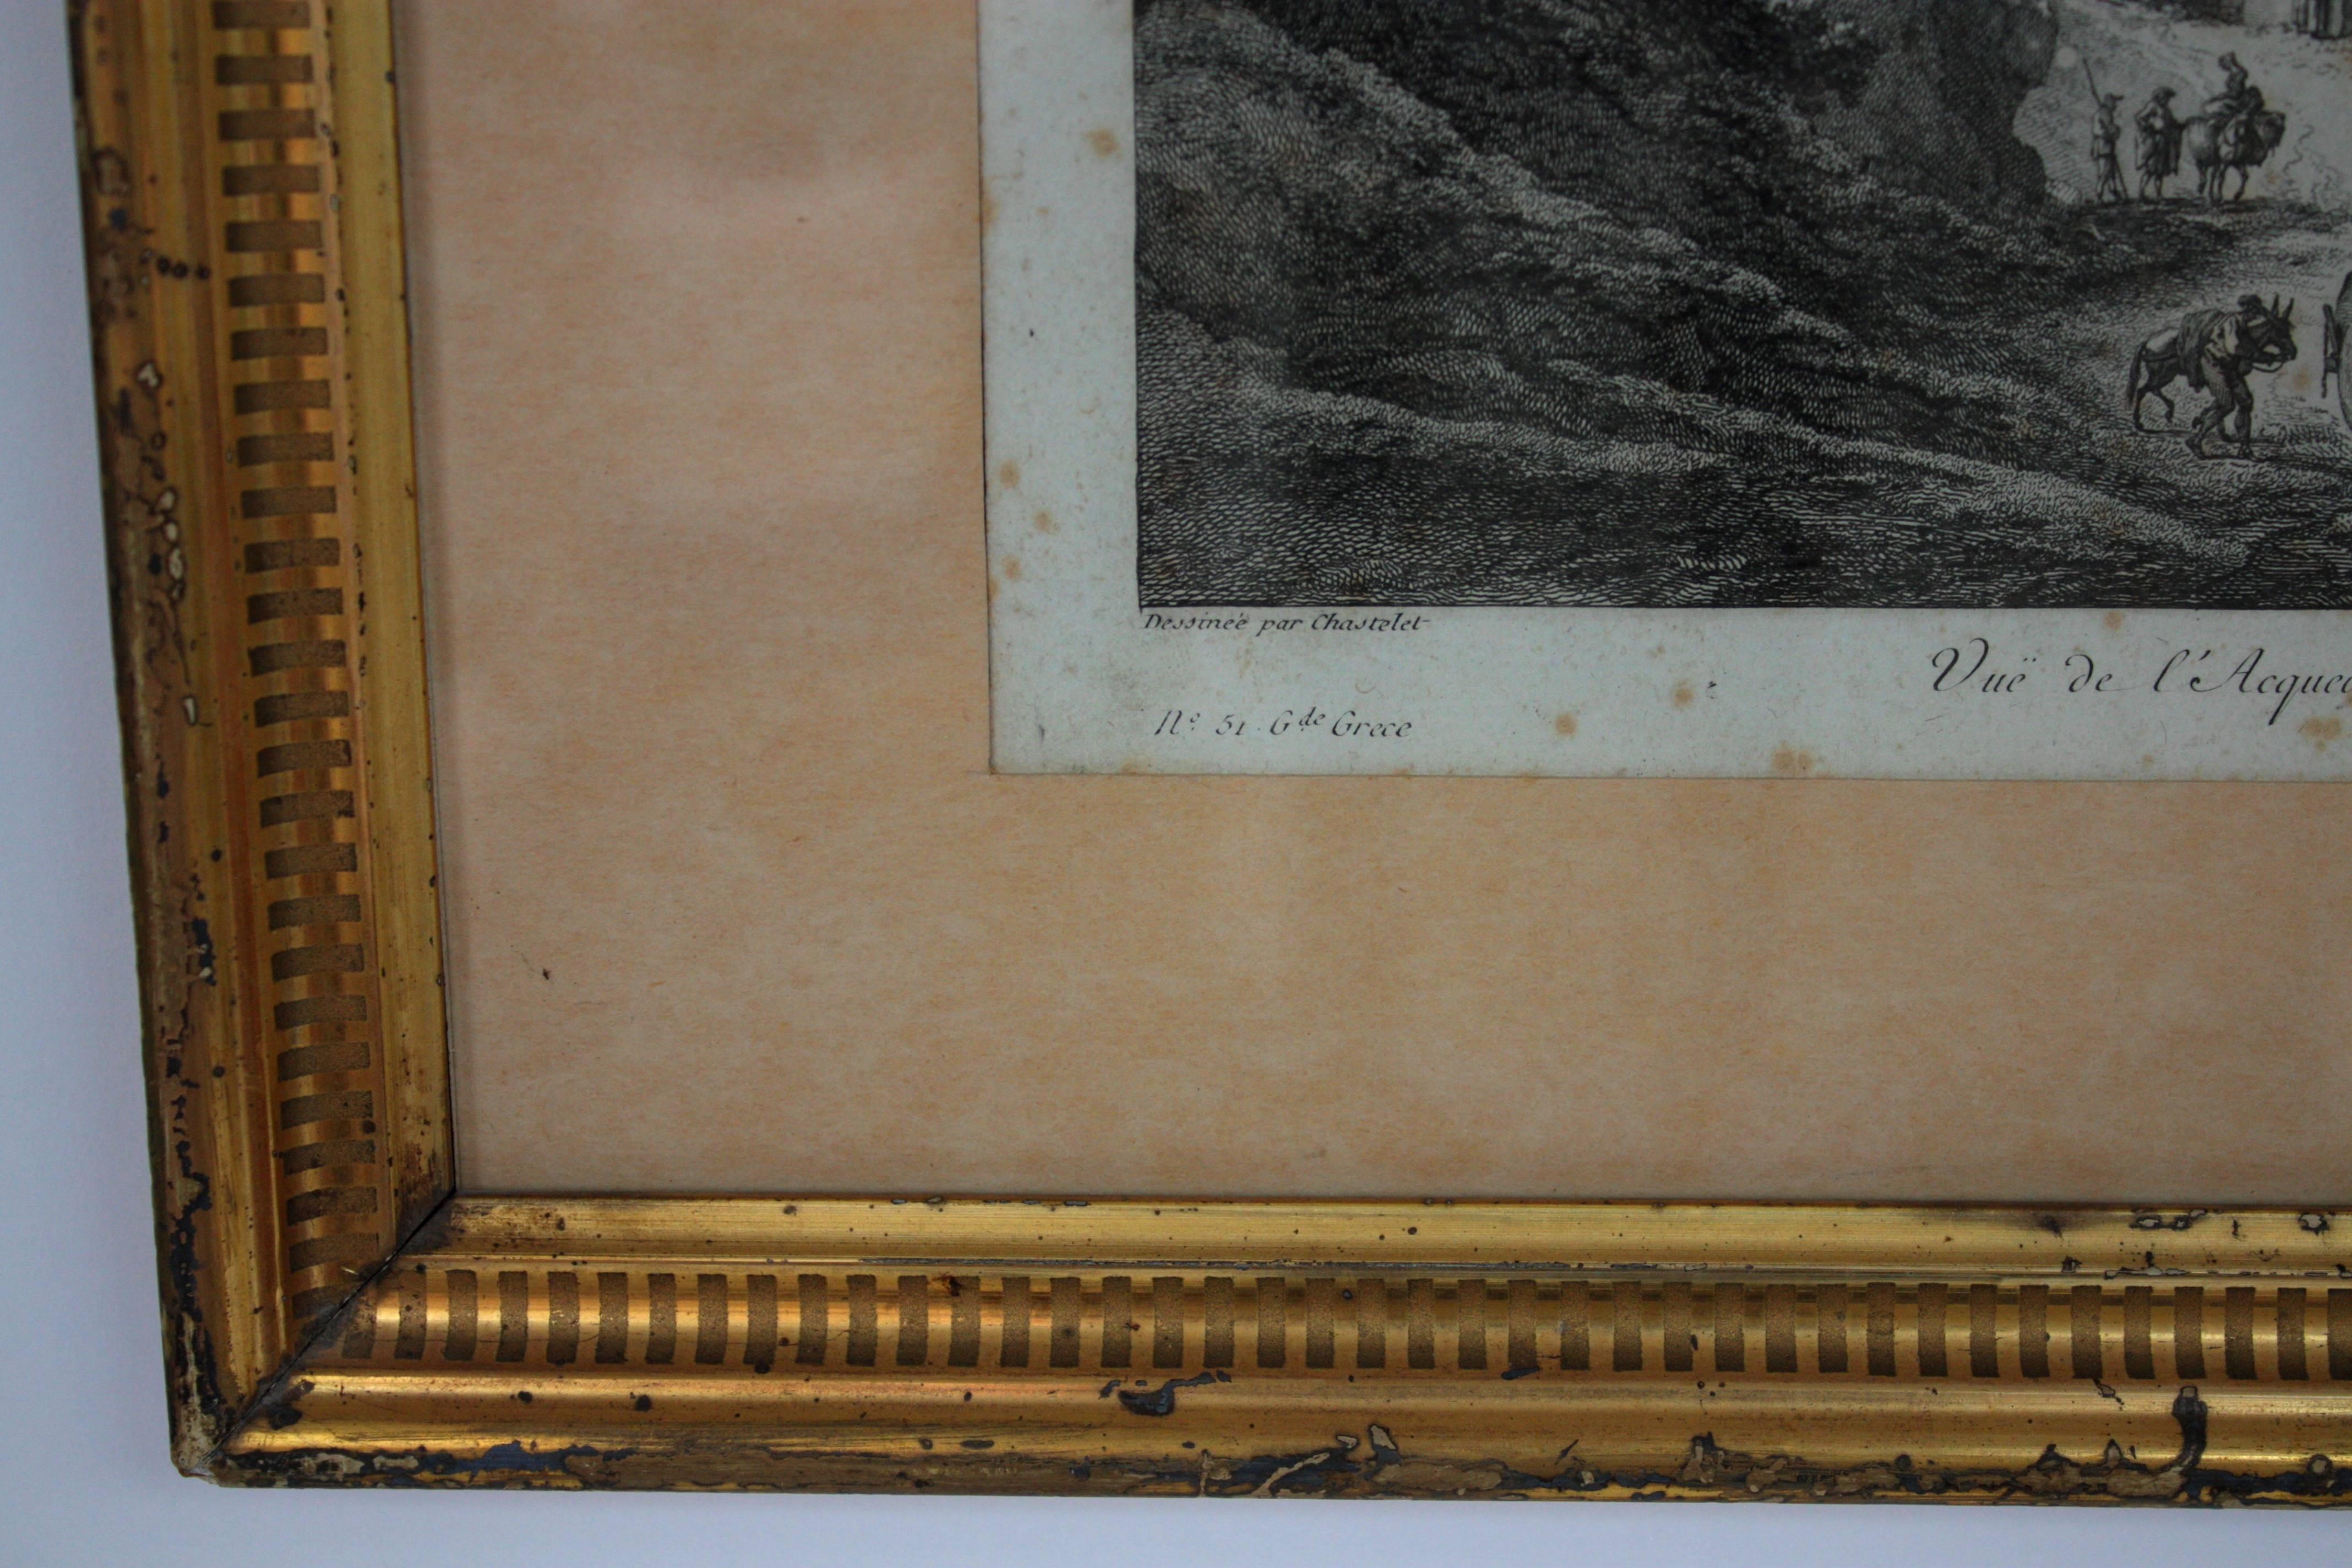 Kupferstich in Schwarz auf Bütten gedruckt, gerahmt mit einem neoklassizistischen Rahmen aus Blattgold. Der Stich zeigt eine schöne Aussicht vom Aquädukt von Corigliano in Kalabrien.
Markierungen mit dem Namen des Entwerfers (Chastalet), des